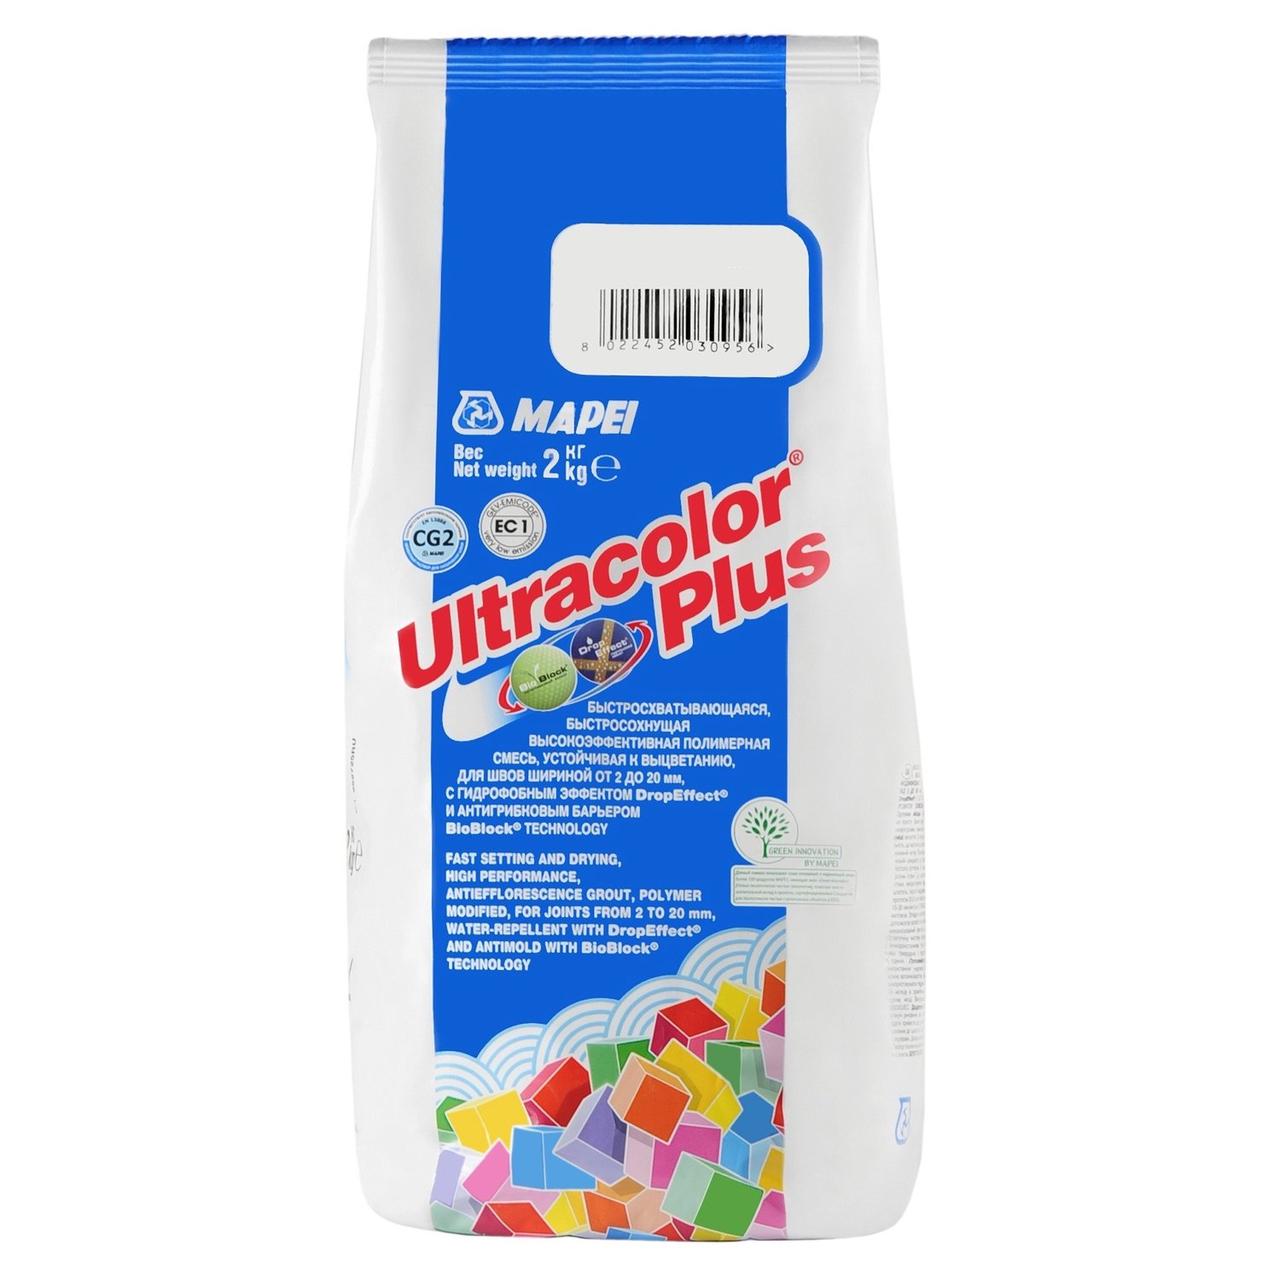 Ultracolor Plus затирка № 144/2кг (Шоколад)